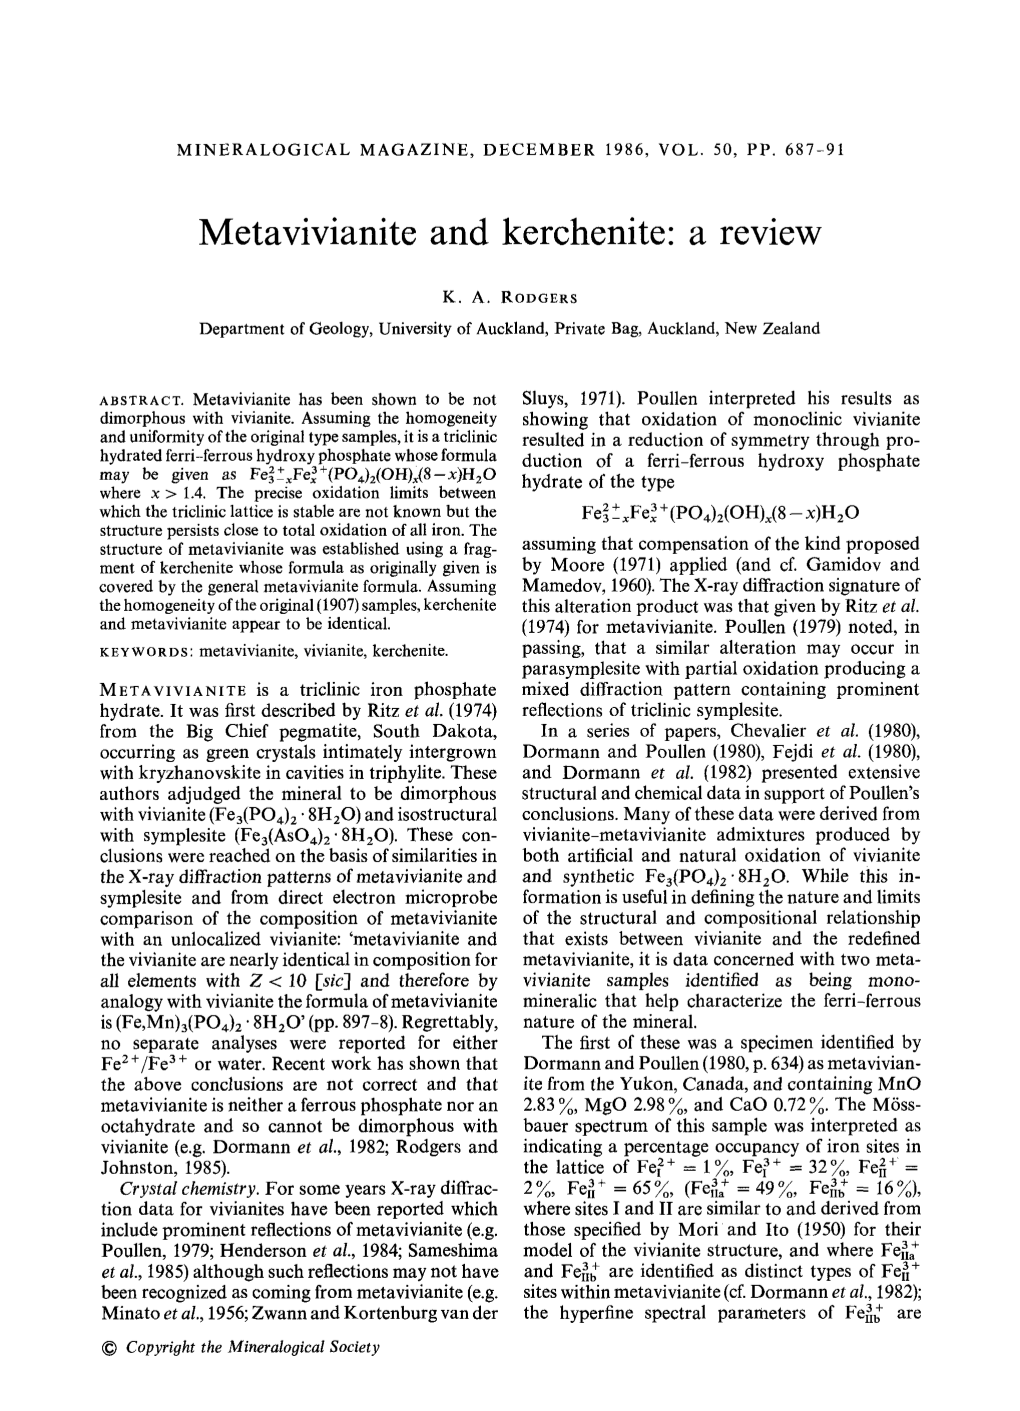 Metavivianite and Kerchenite" a Review